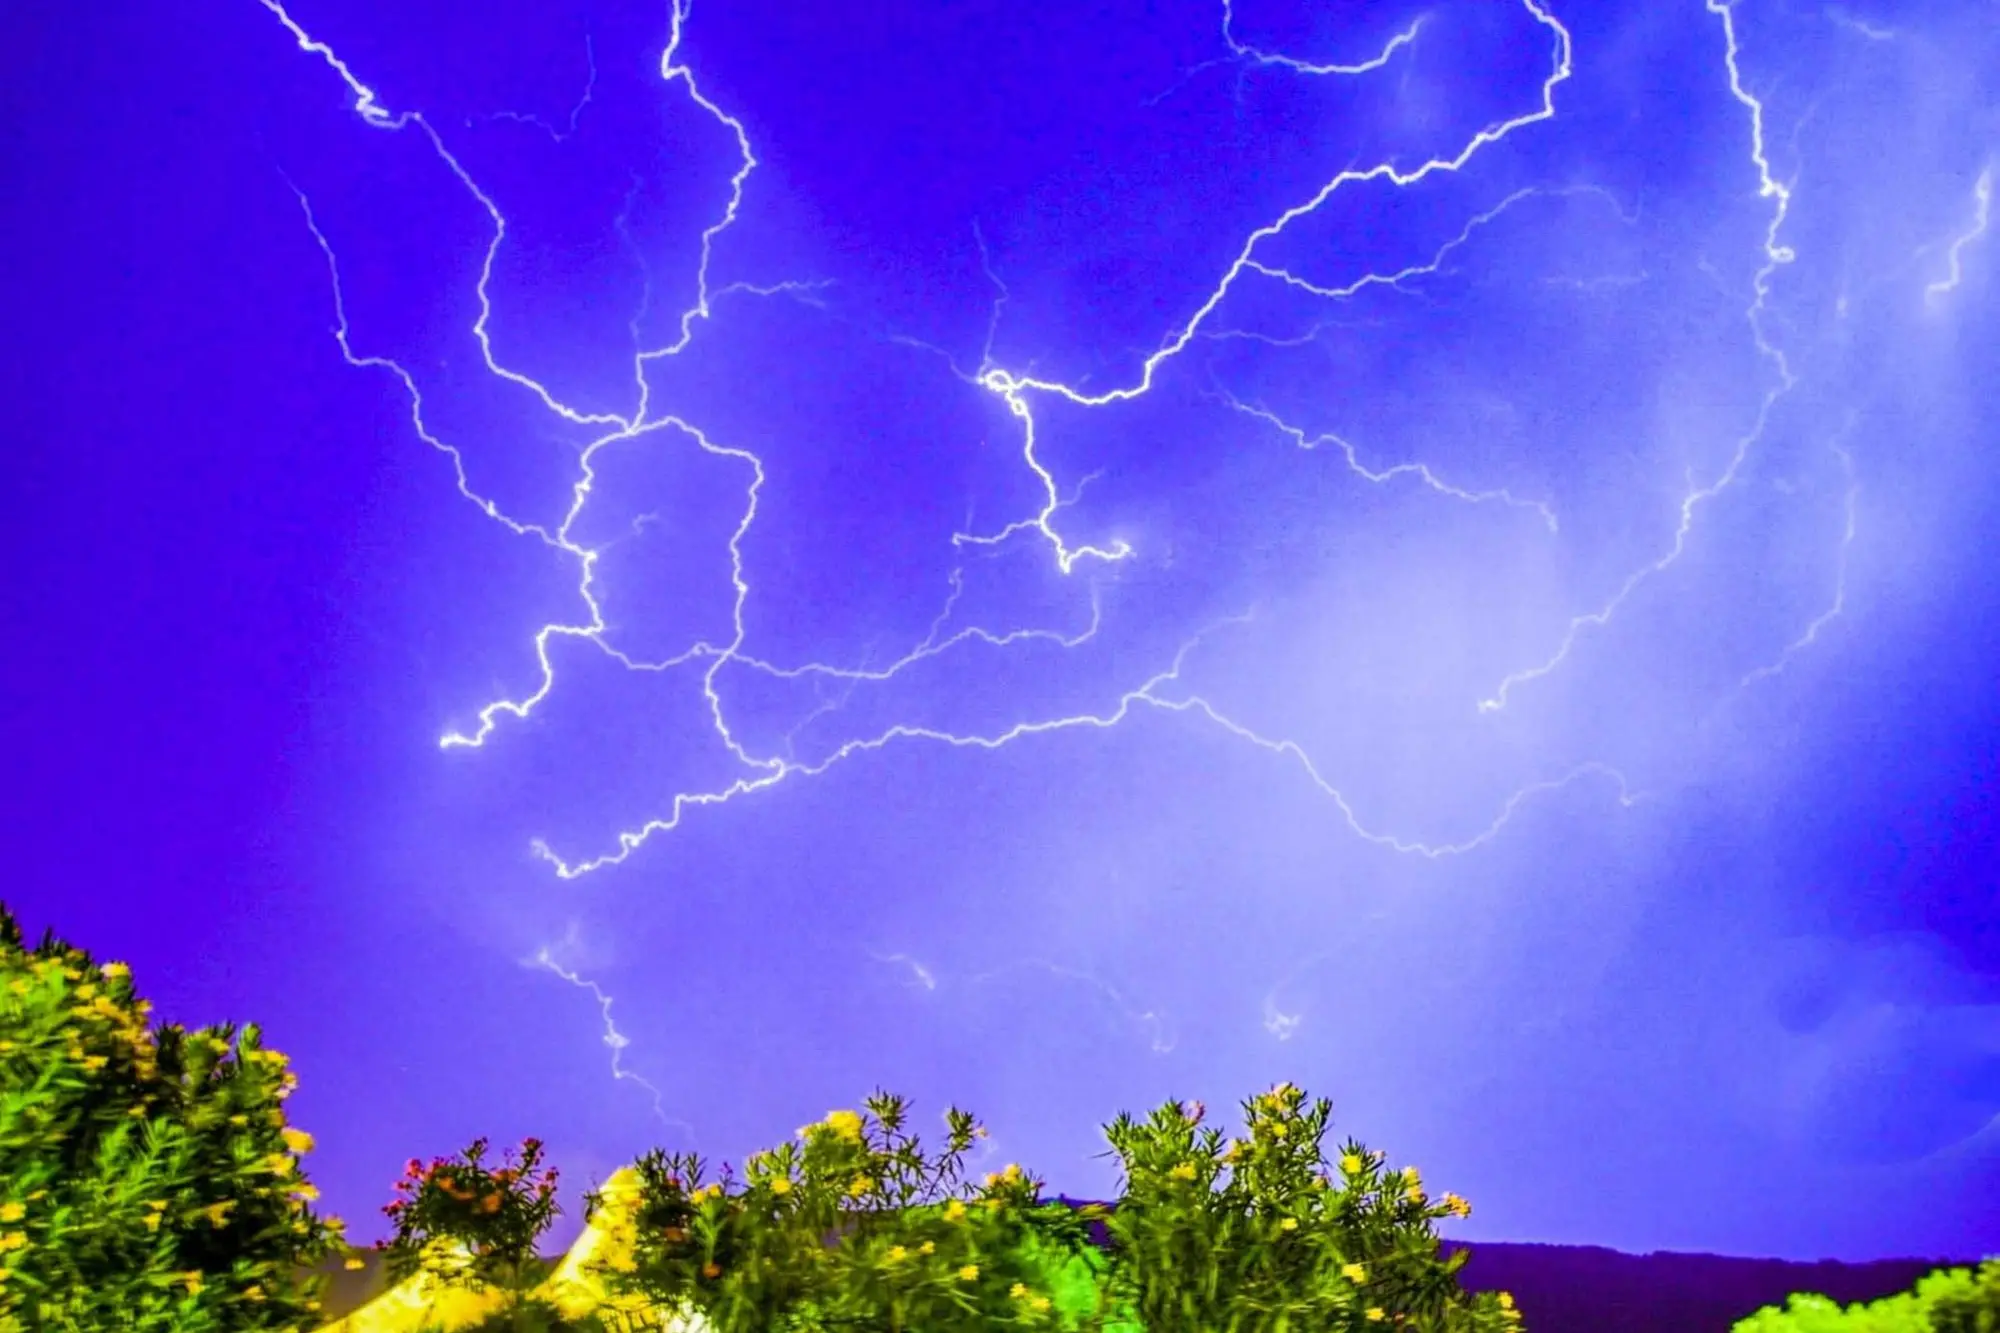 Spettacolare immagine scattata stanotte a Capo Caccia durante il temporale che si è abbattuto sulla costa di Alghero (Foto Lorenzo Busilacchi)